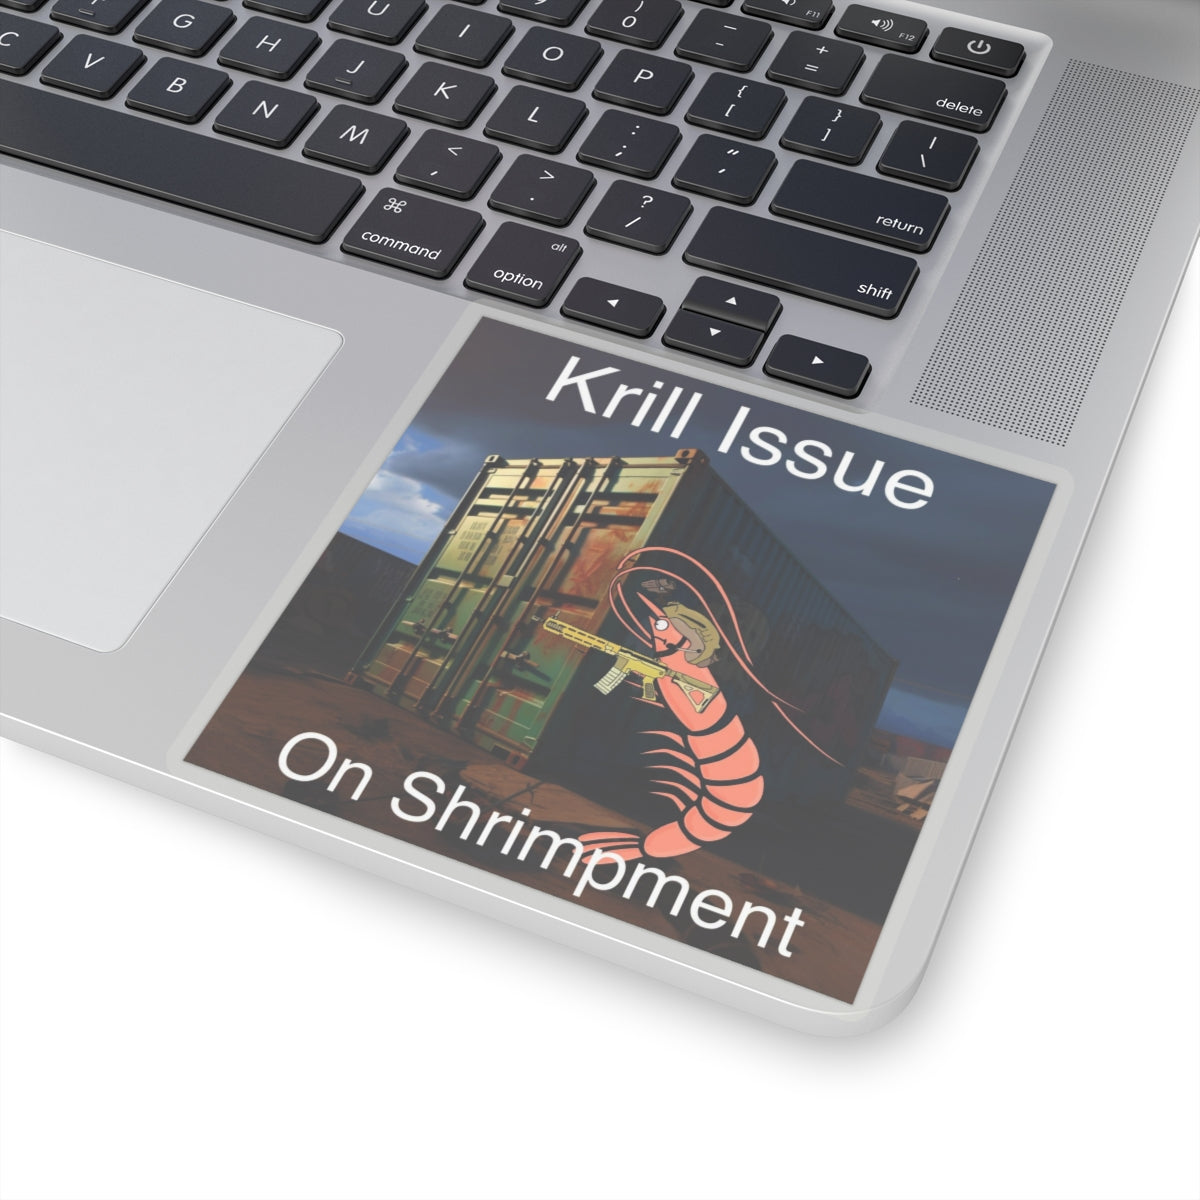 Krill Issue on Shrimpment